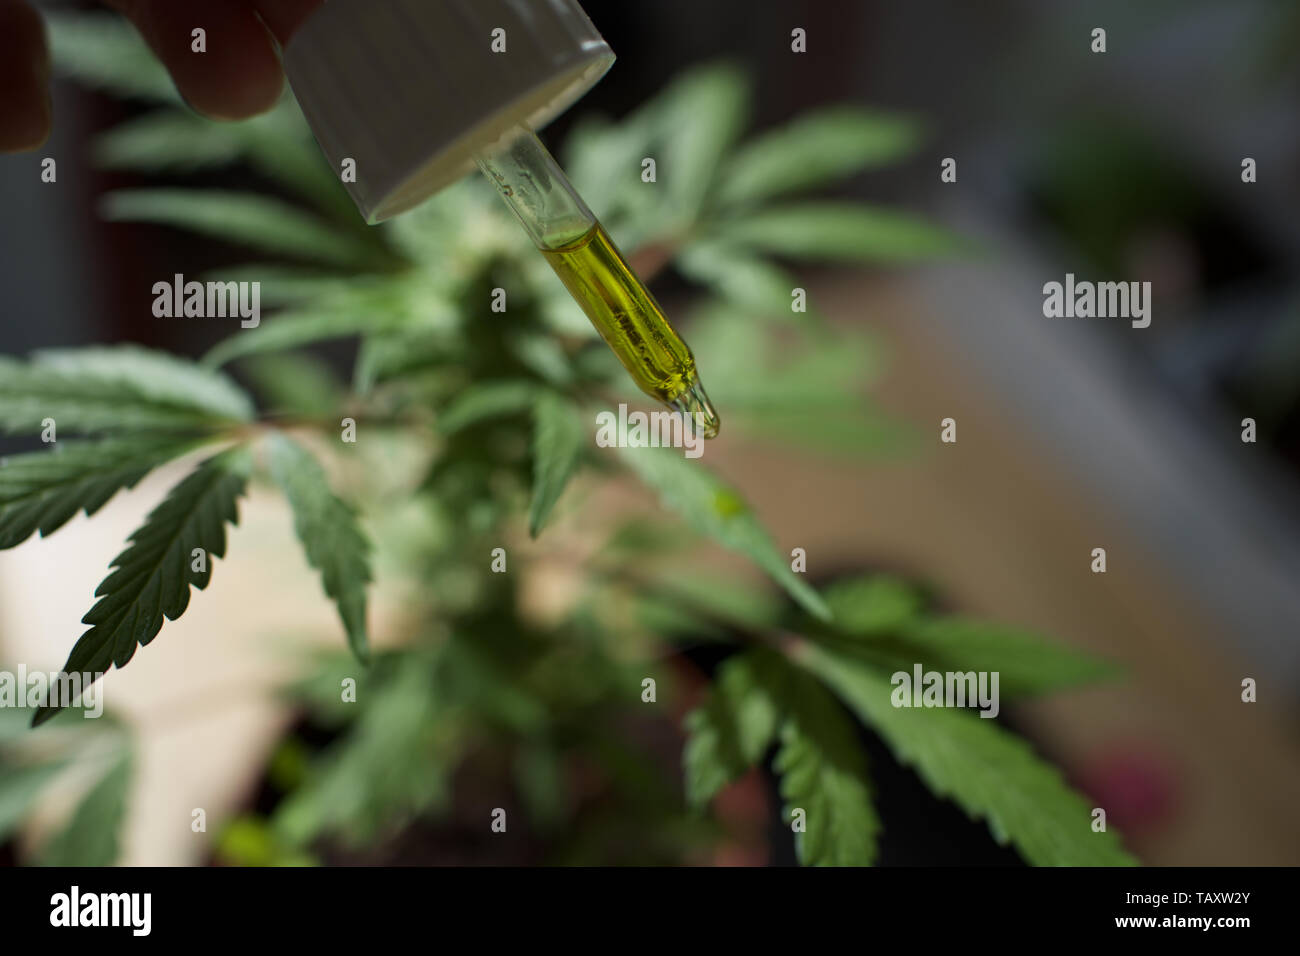 Planta de cannabis hembra con cuentagotas de aceite CBD Foto de stock